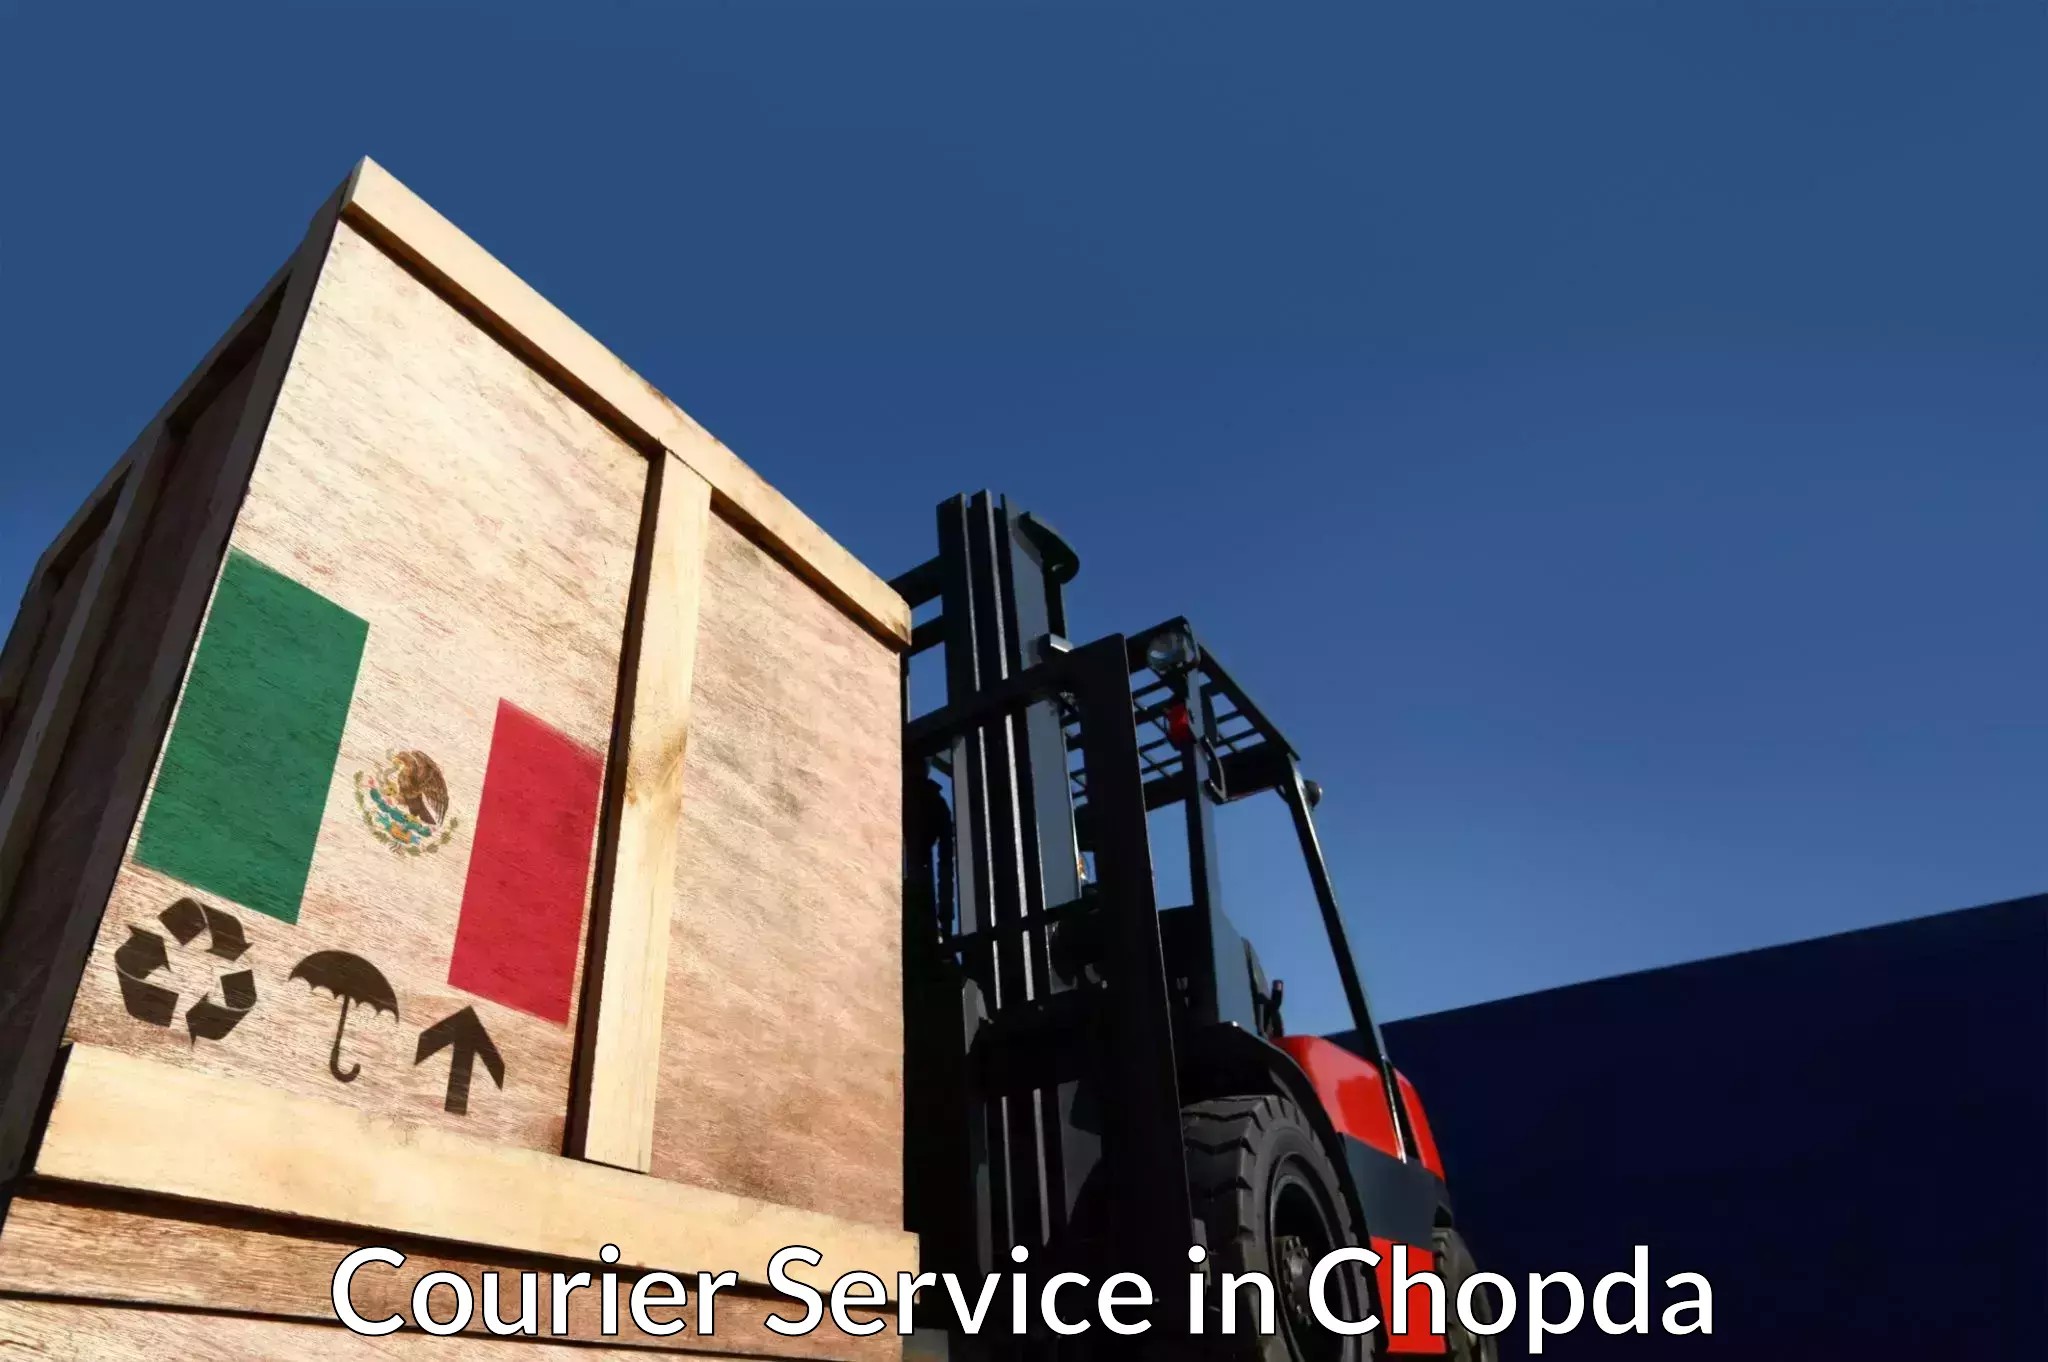 Nationwide shipping capabilities in Chopda